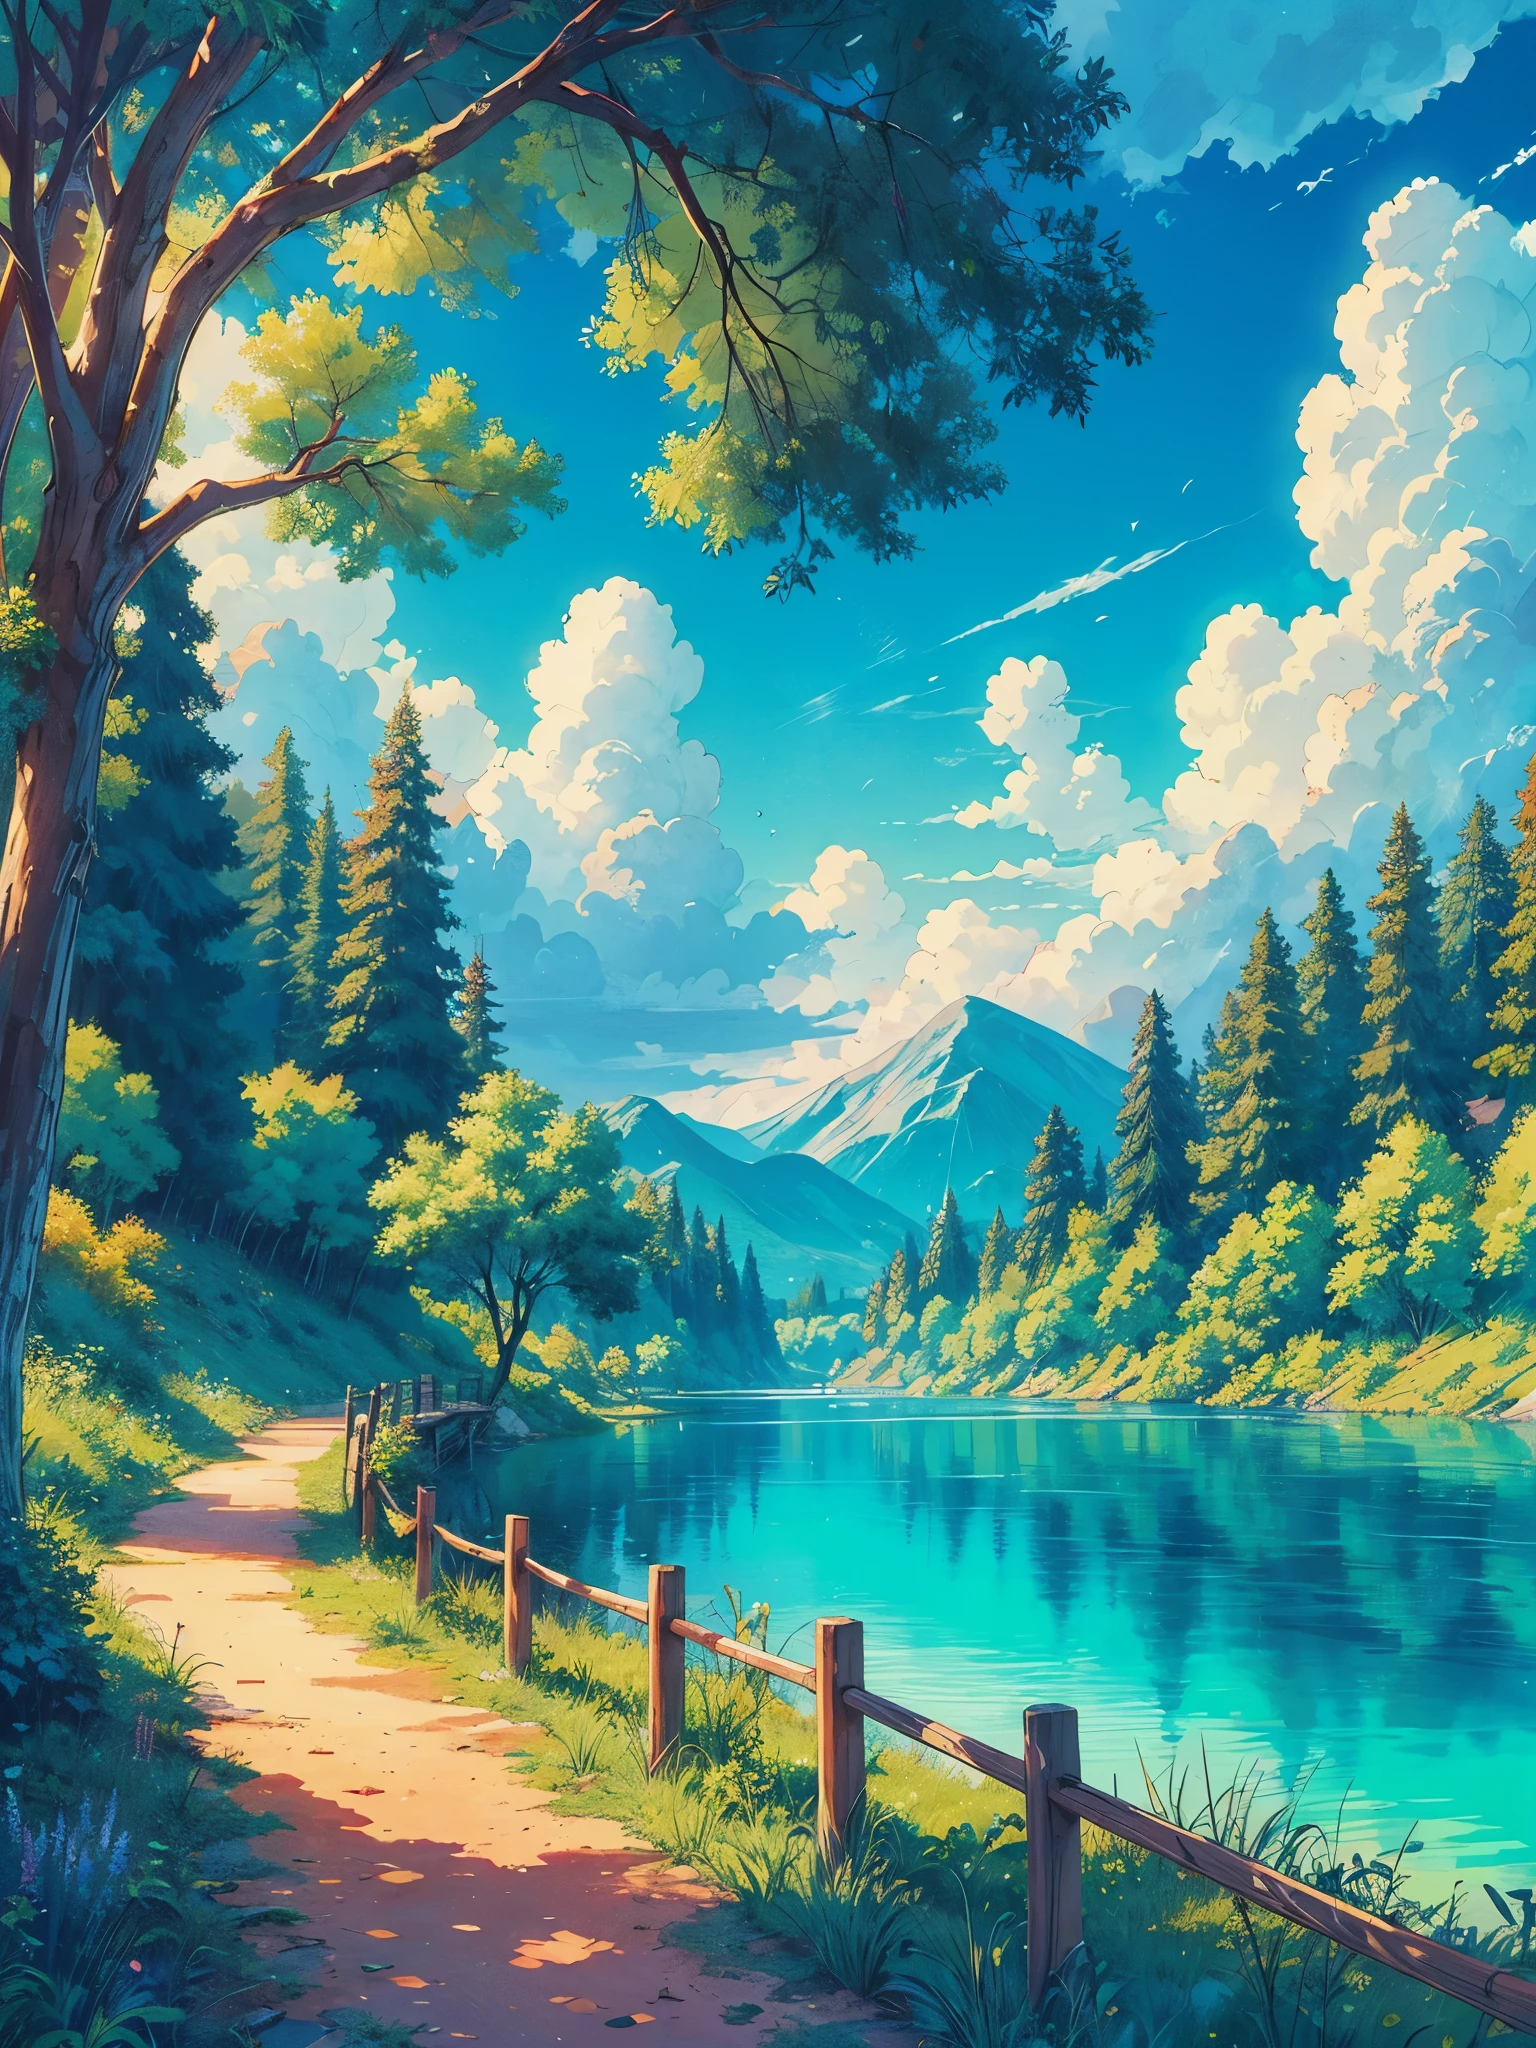 아름다운 청록색 호수 옆 숲 속 산책로의 넓은 로피 장면을 애니메이션으로 그려보세요., 애니메이션 톤, 아름다운 흐린 하늘, 생생한 컬러 톤, 걸작, 평화로운 장면